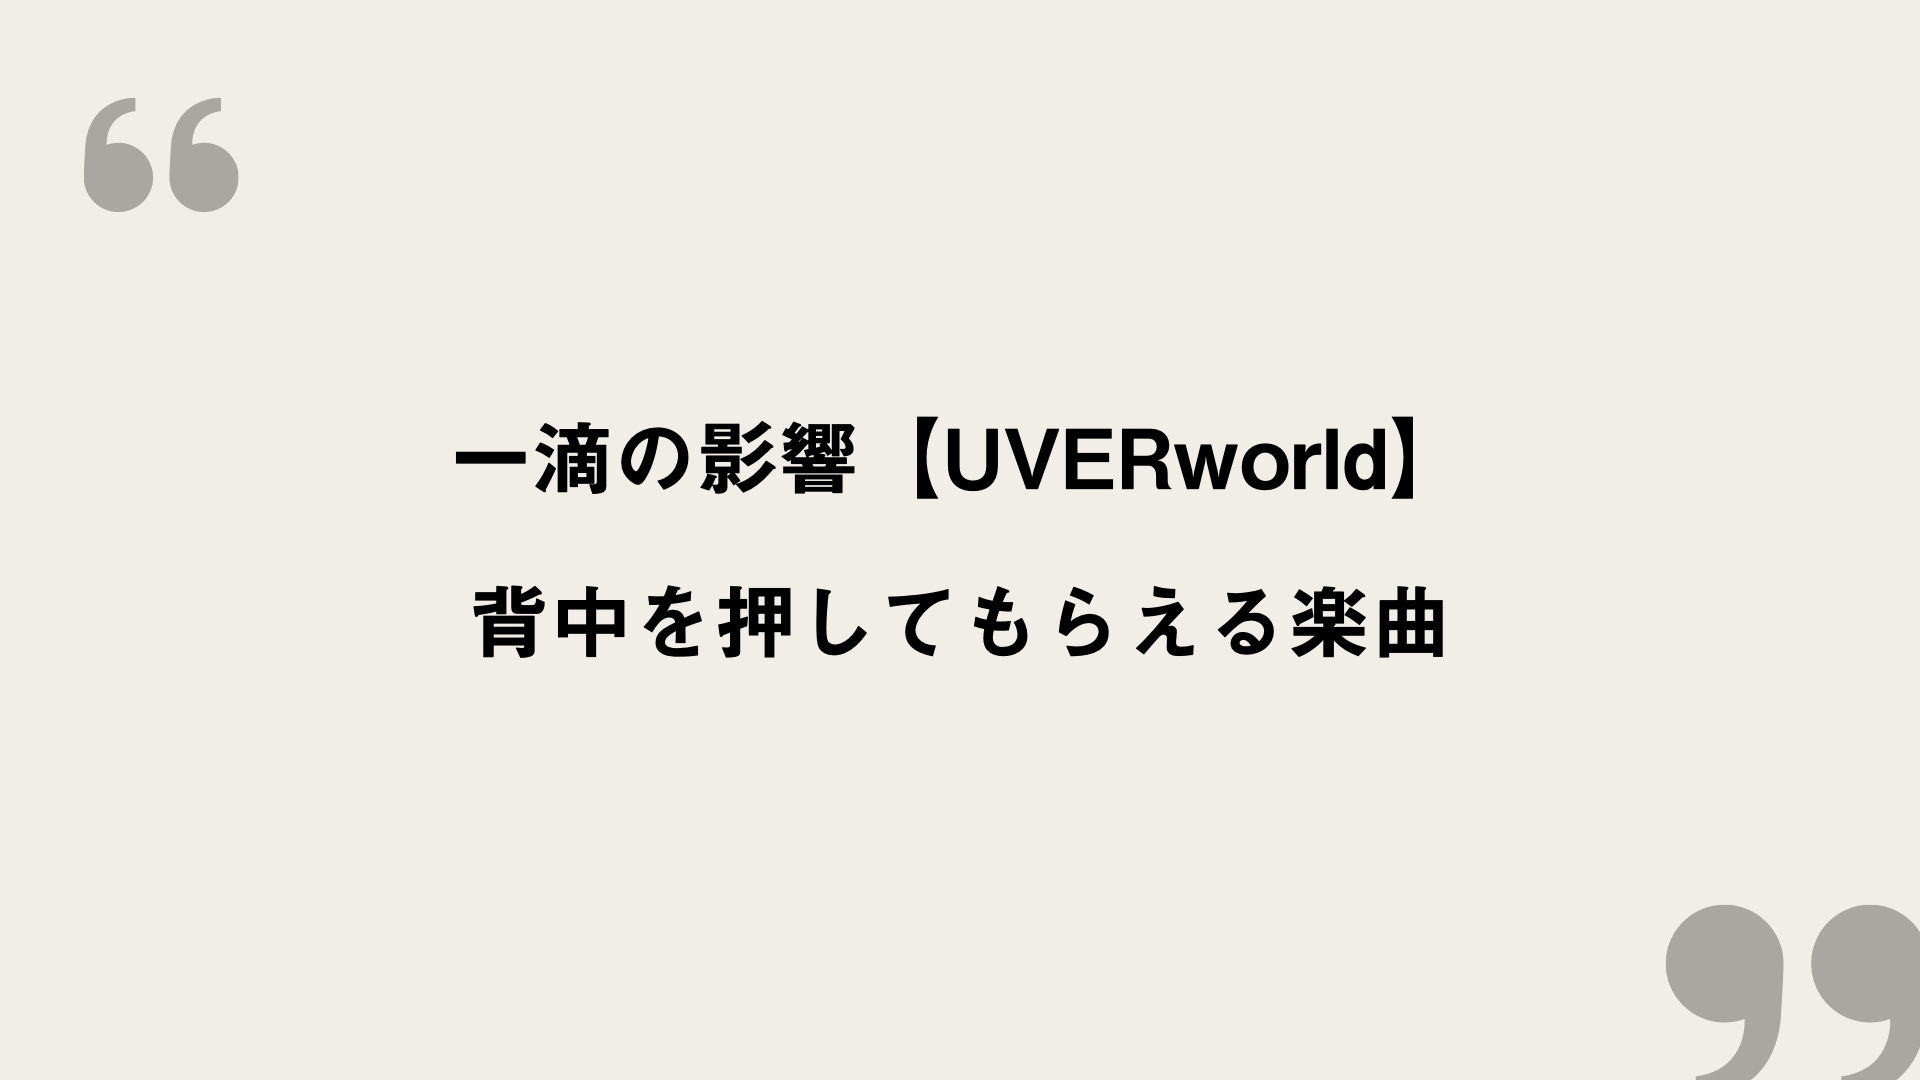 一滴の影響 Uverworld 歌詞の意味を考察 背中を押してもらえる楽曲 Framu Media